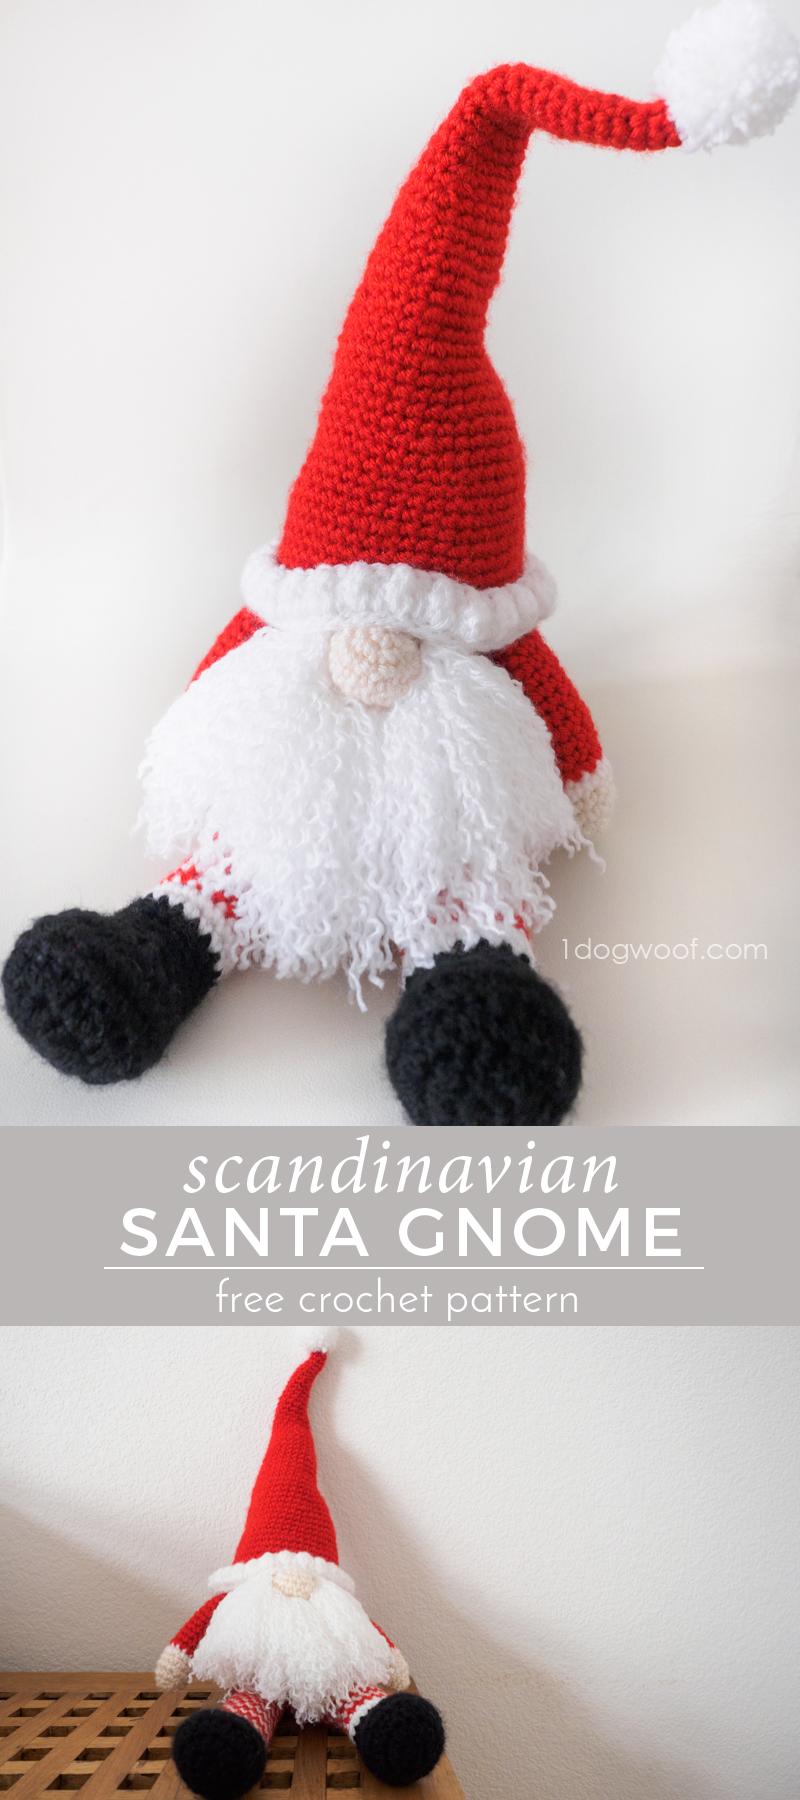 北欧圣诞老人侏儒免费钩针模式。做一个完美的手工圣诞礼物!| www.ssjjudo.com